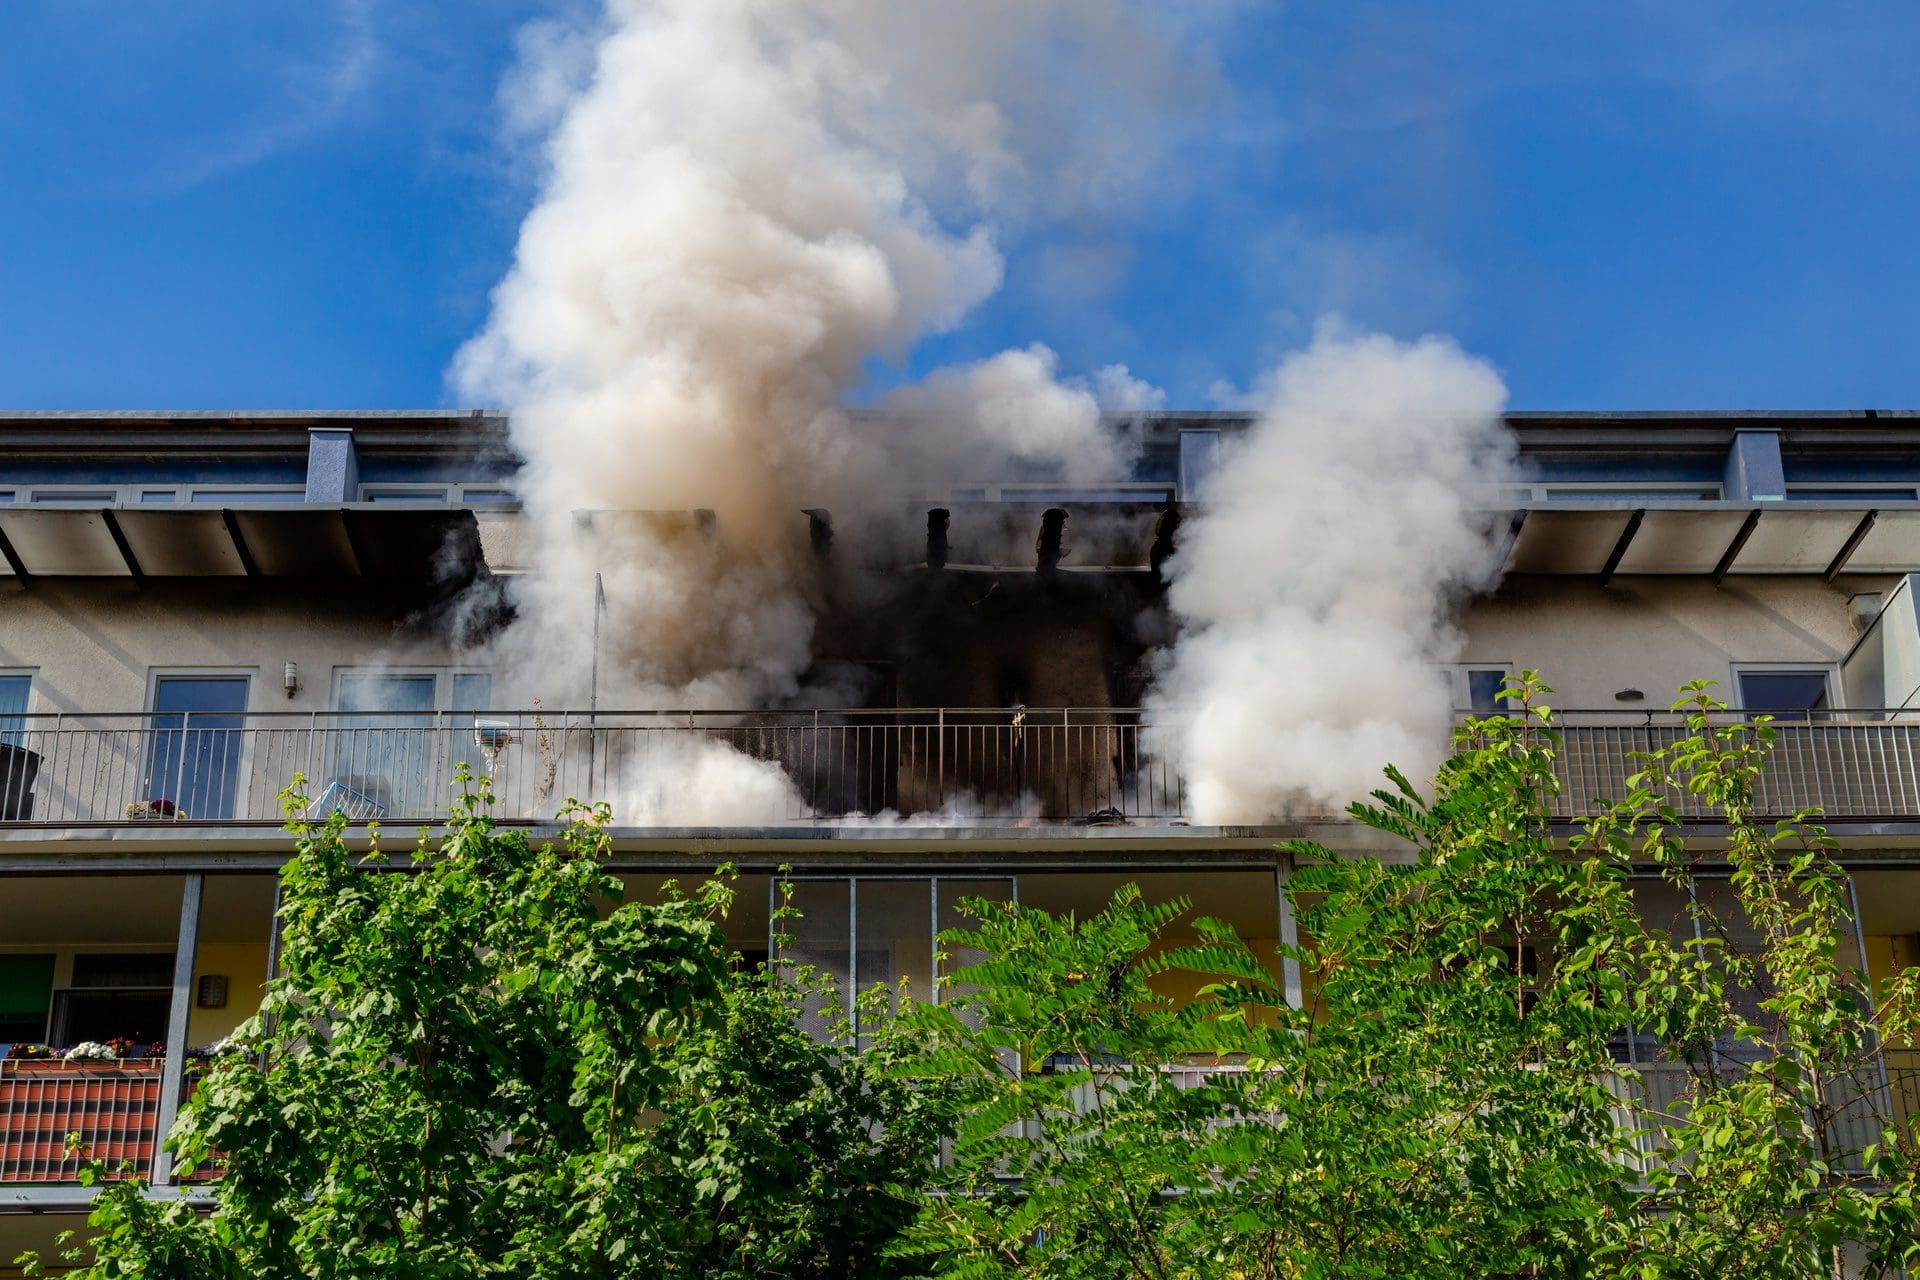 Brand in Wohnung - Rauch steigt auf | Ein Wohnungsbrand hinterlässt durch den Brandrauch auch im Wohnungsinneren Brandgeruch, Ruß und Giftstoffe, die professionell beseitigt werden müssen. (© Robert Leßmann / stock.adobe.com)